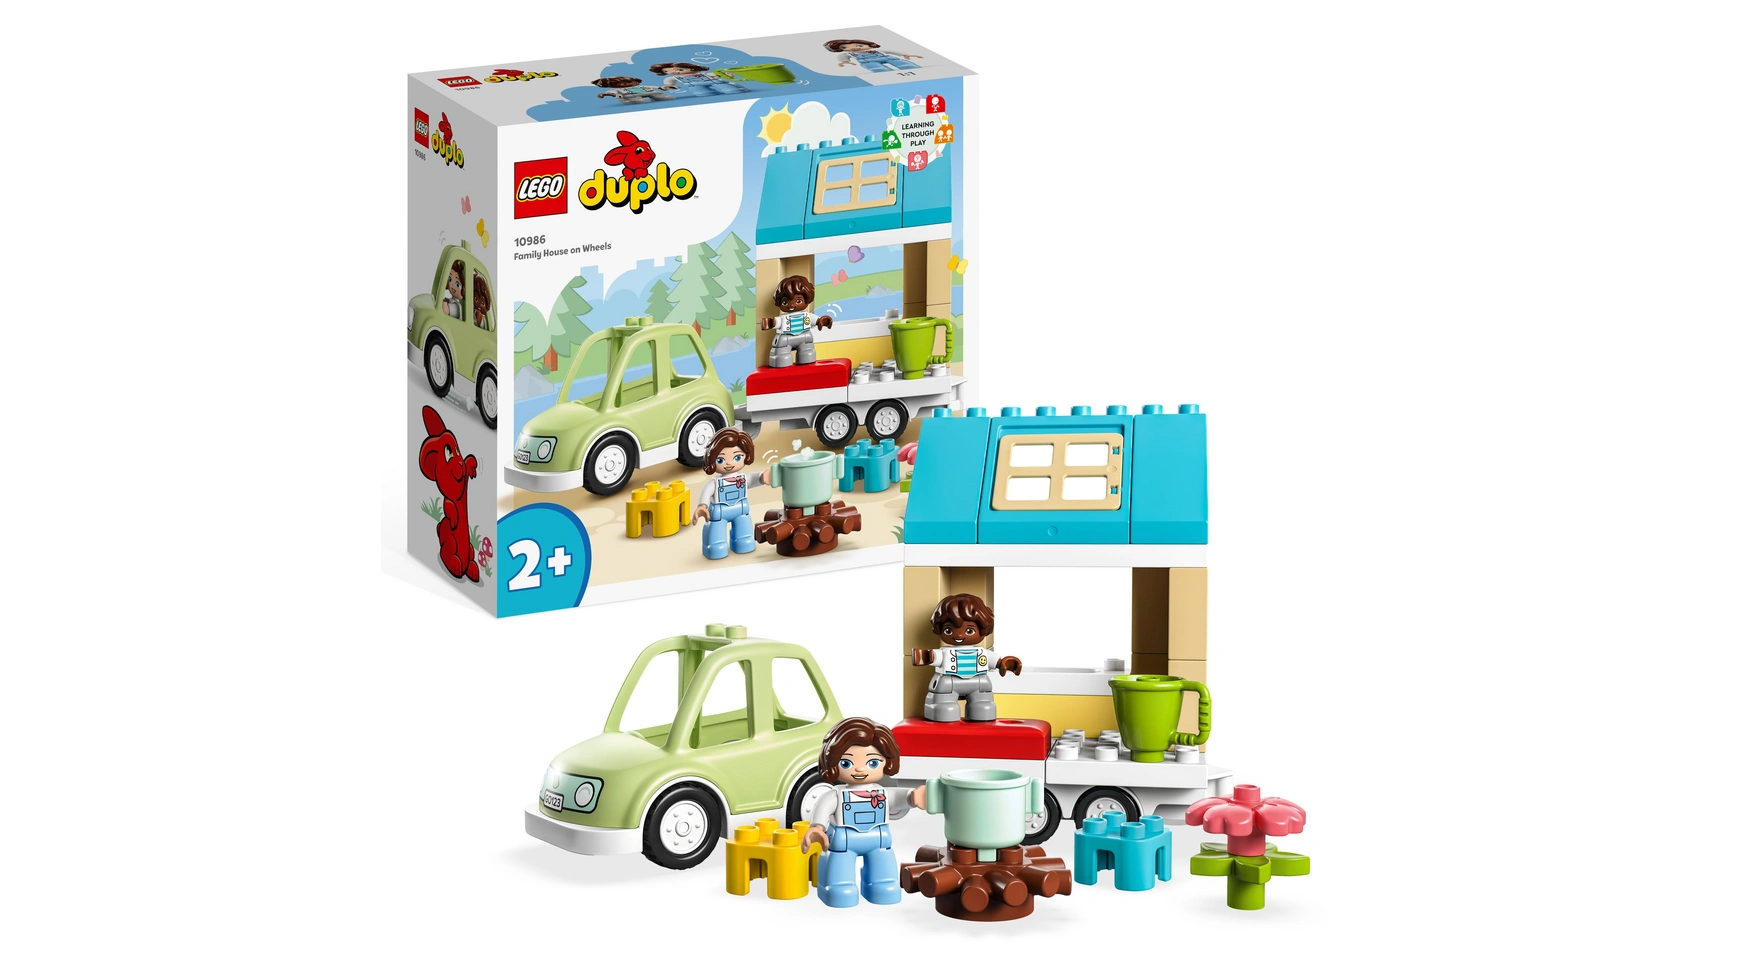 Lego DUPLO Дом на колесах, игрушечная машина с большими кубиками lego duplo town ветряная турбина и электромобиль развивающая игрушка для детей от 2 лет и старше